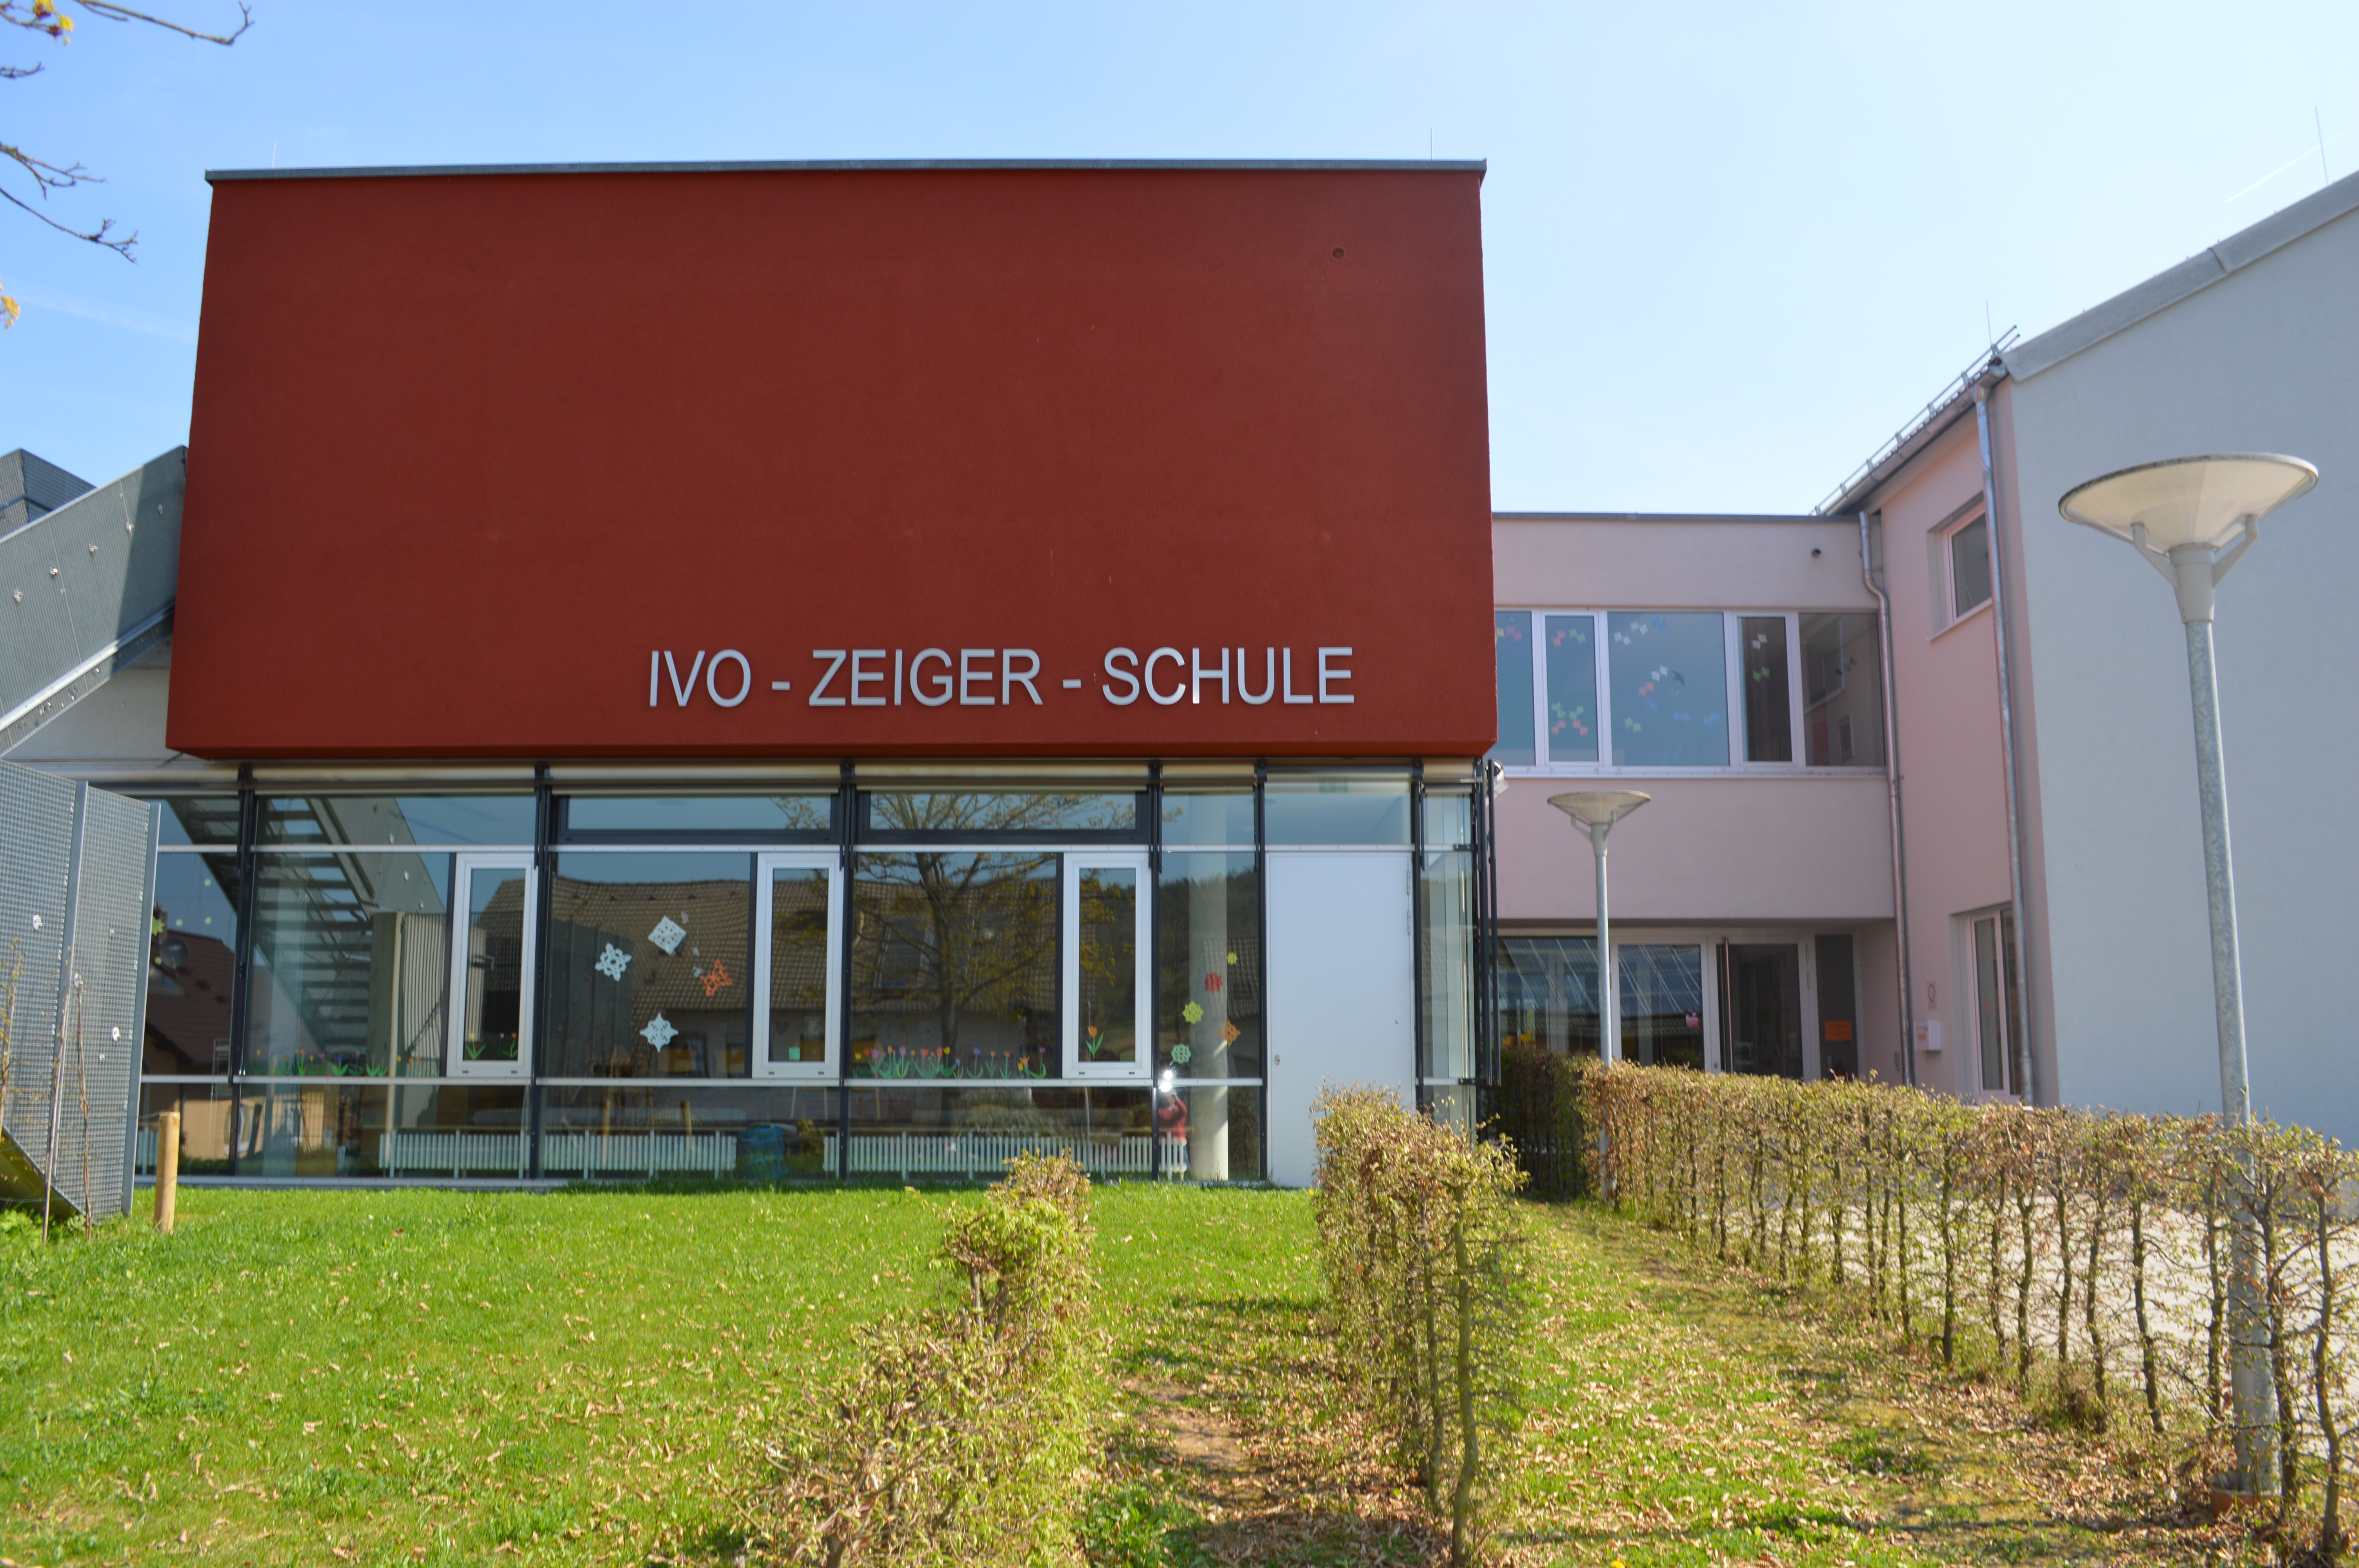 Ivo-Zeiger-Schule